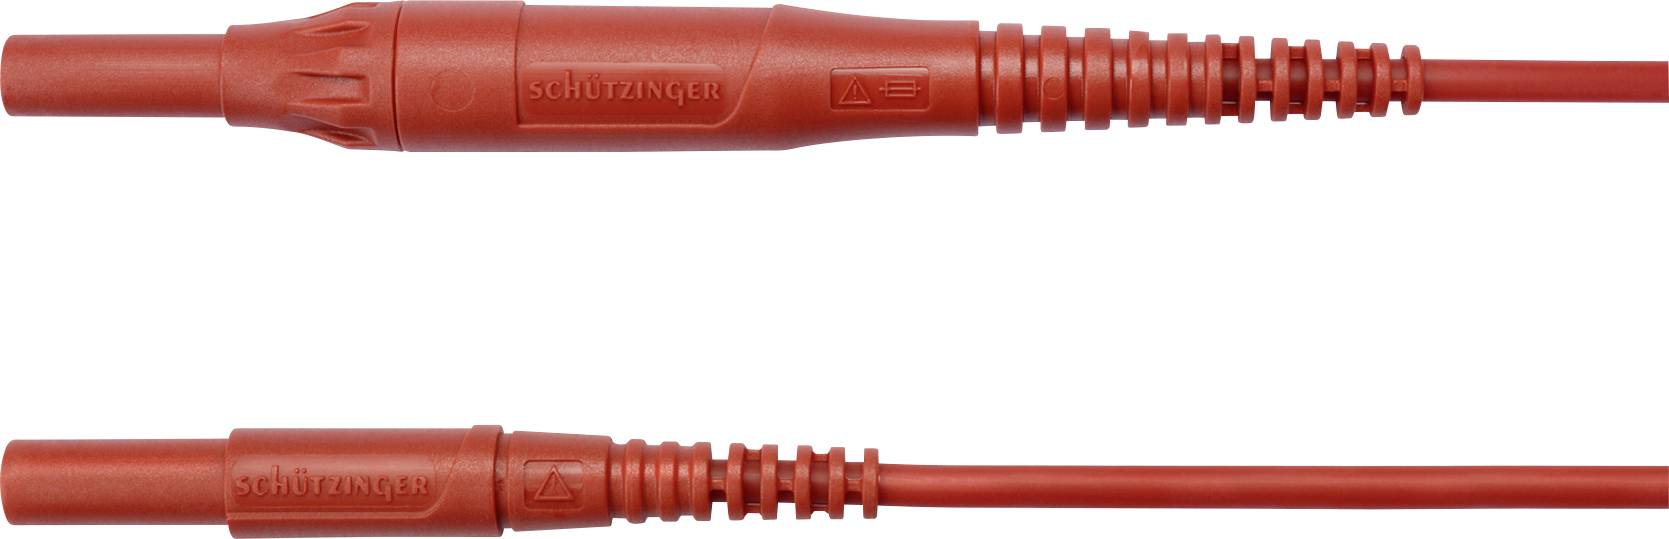 SCHÜTZINGER MSFK B441 / 1 / 200 / RT Messleitung [Stecker 4 mm - Stecker 4 mm] 200.00 cm Rot 5